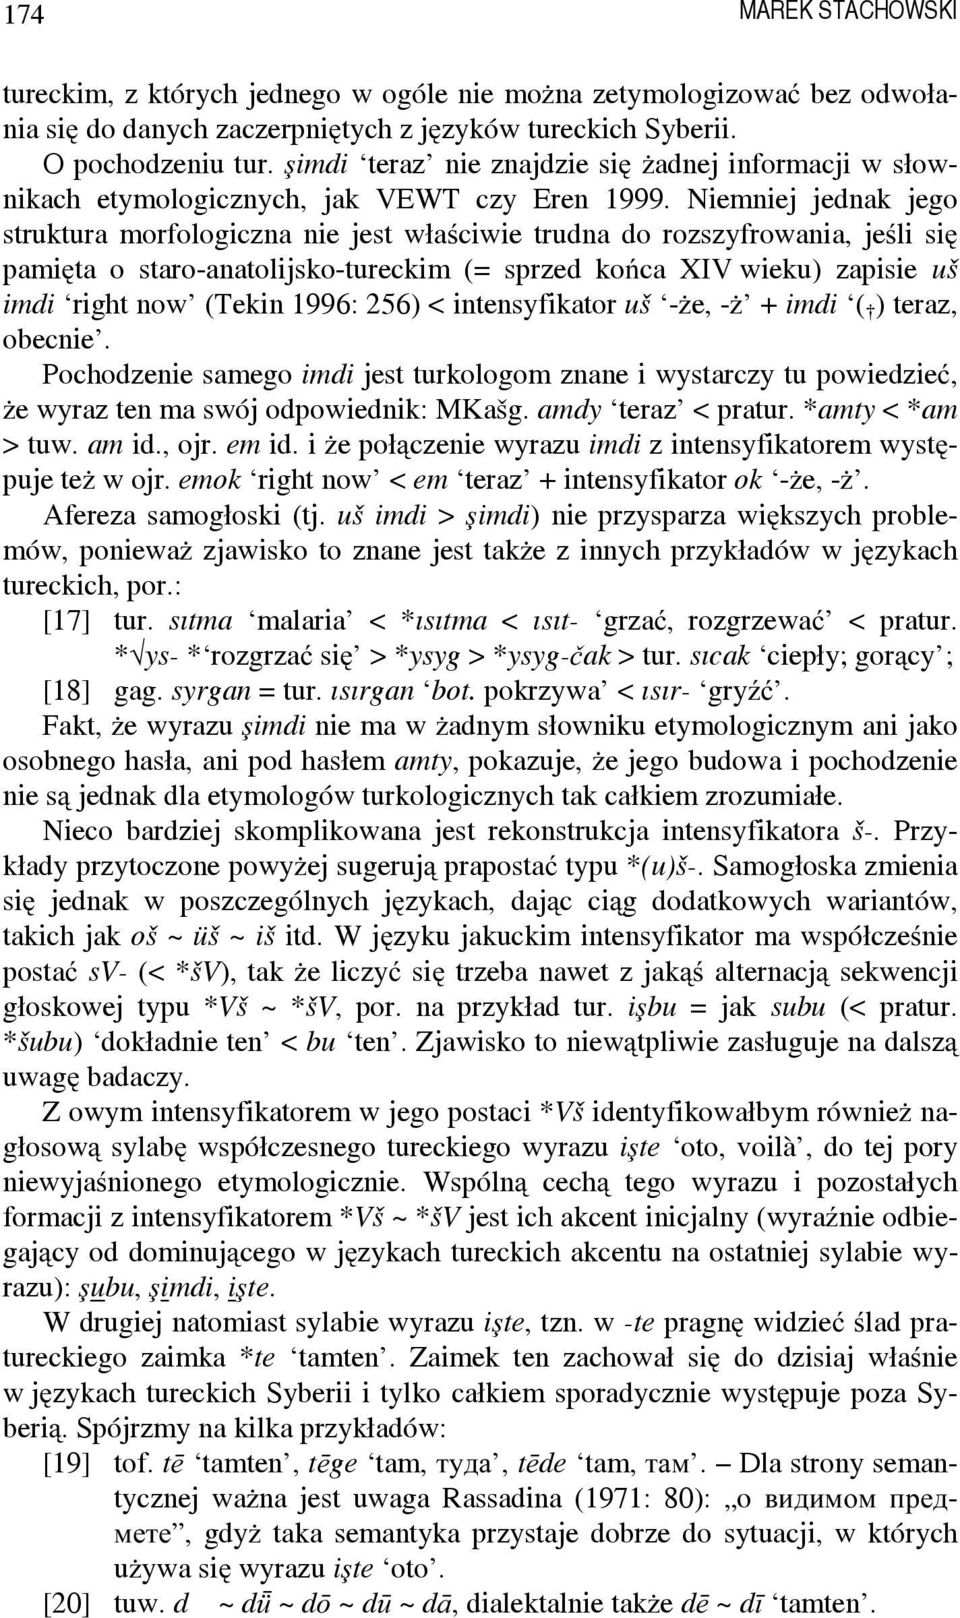 Niemniej jednak jego struktura morfologiczna nie jest właściwie trudna do rozszyfrowania, jeśli się pamięta o staro-anatolijsko-tureckim (= sprzed końca XIV wieku) zapisie uš imdi right now (Tekin